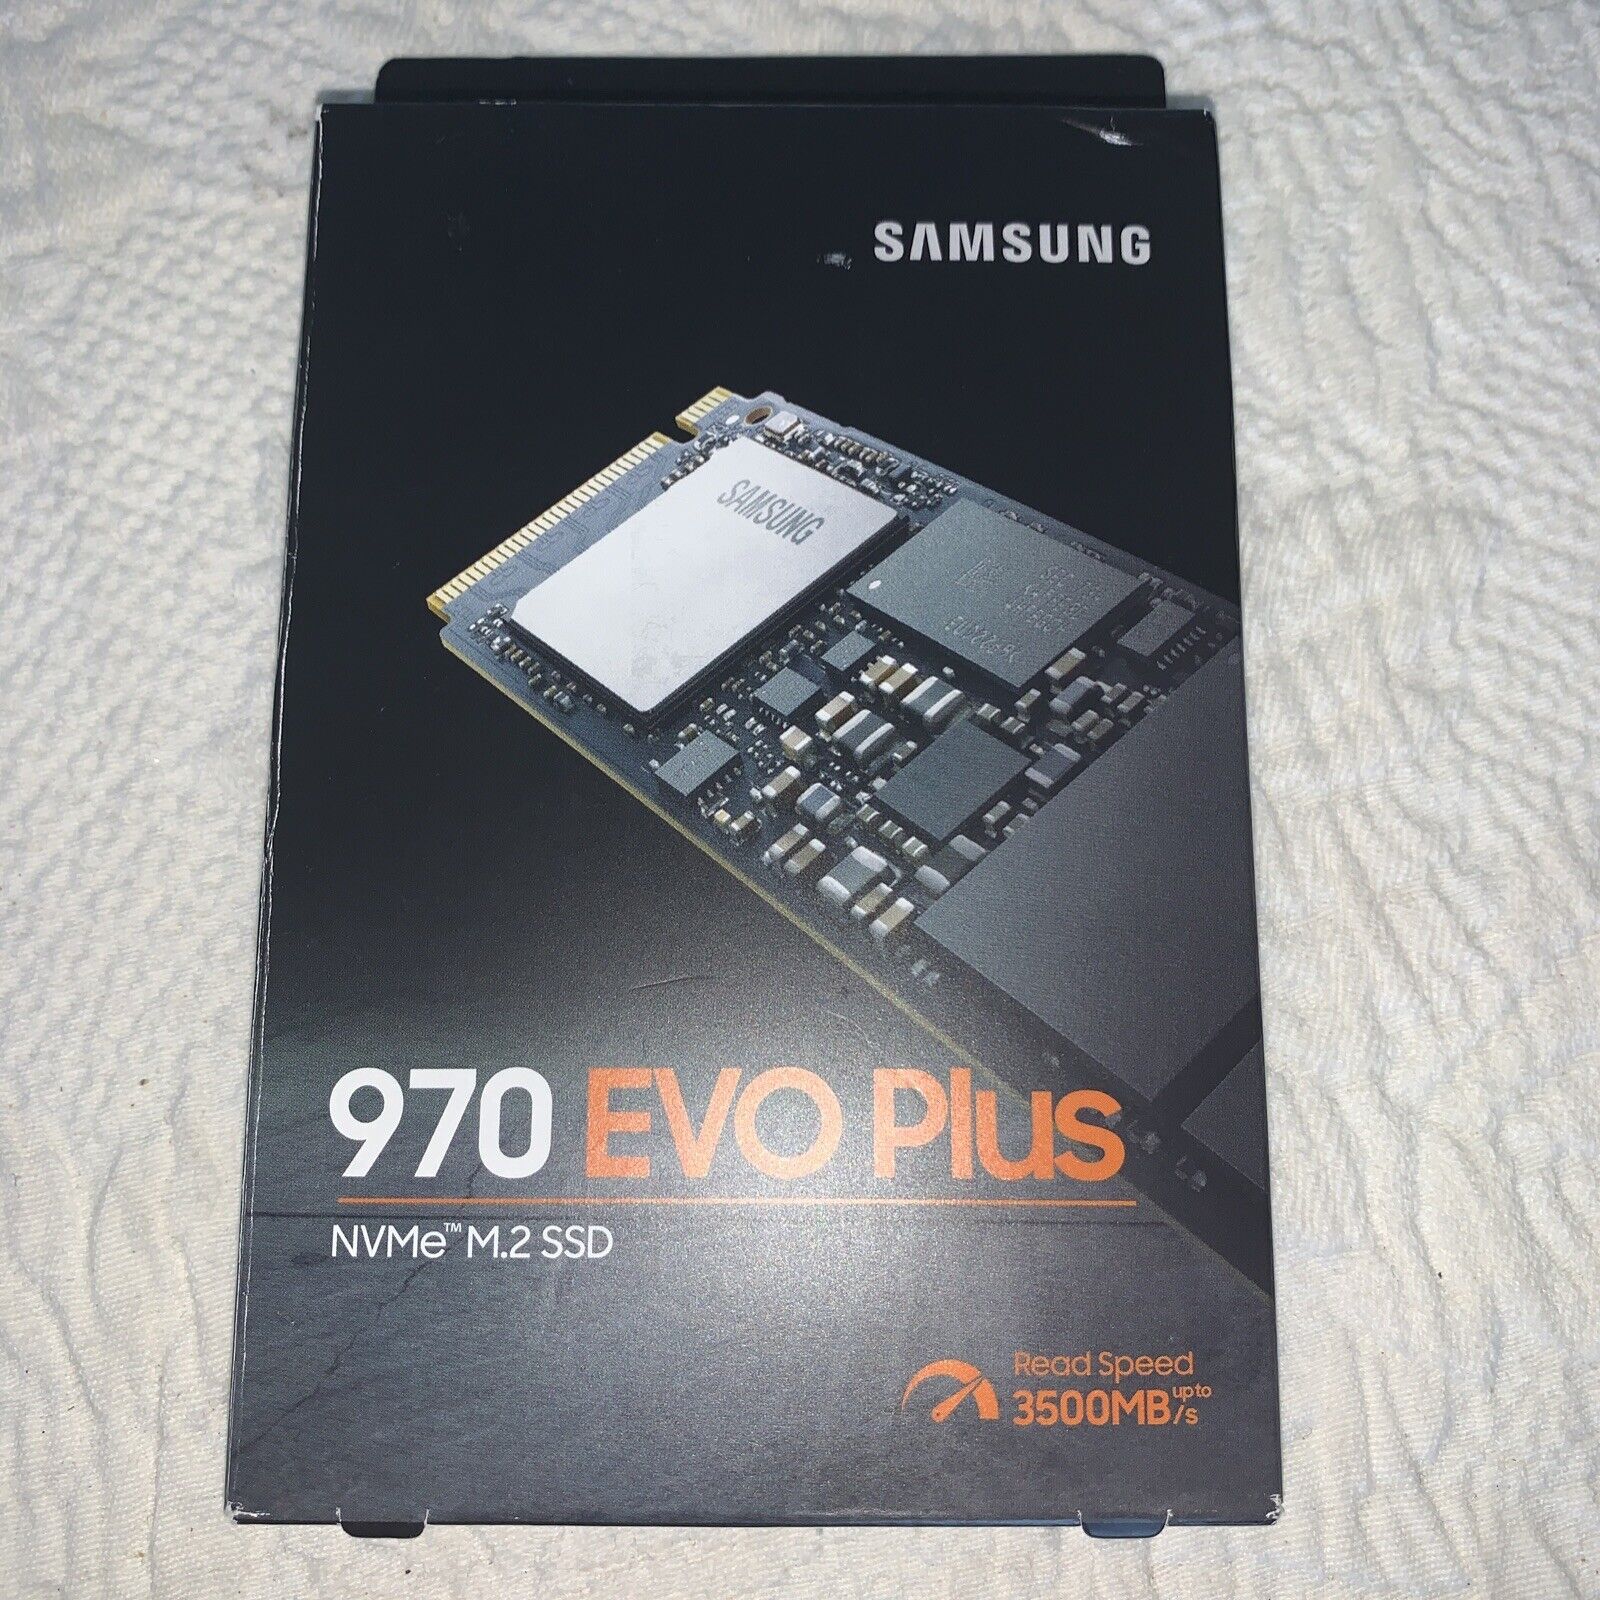 Samsung 970 EVO Plus 1TB M.2 NVMe Internal SSD - (MZ-V7S1T0B/AM)